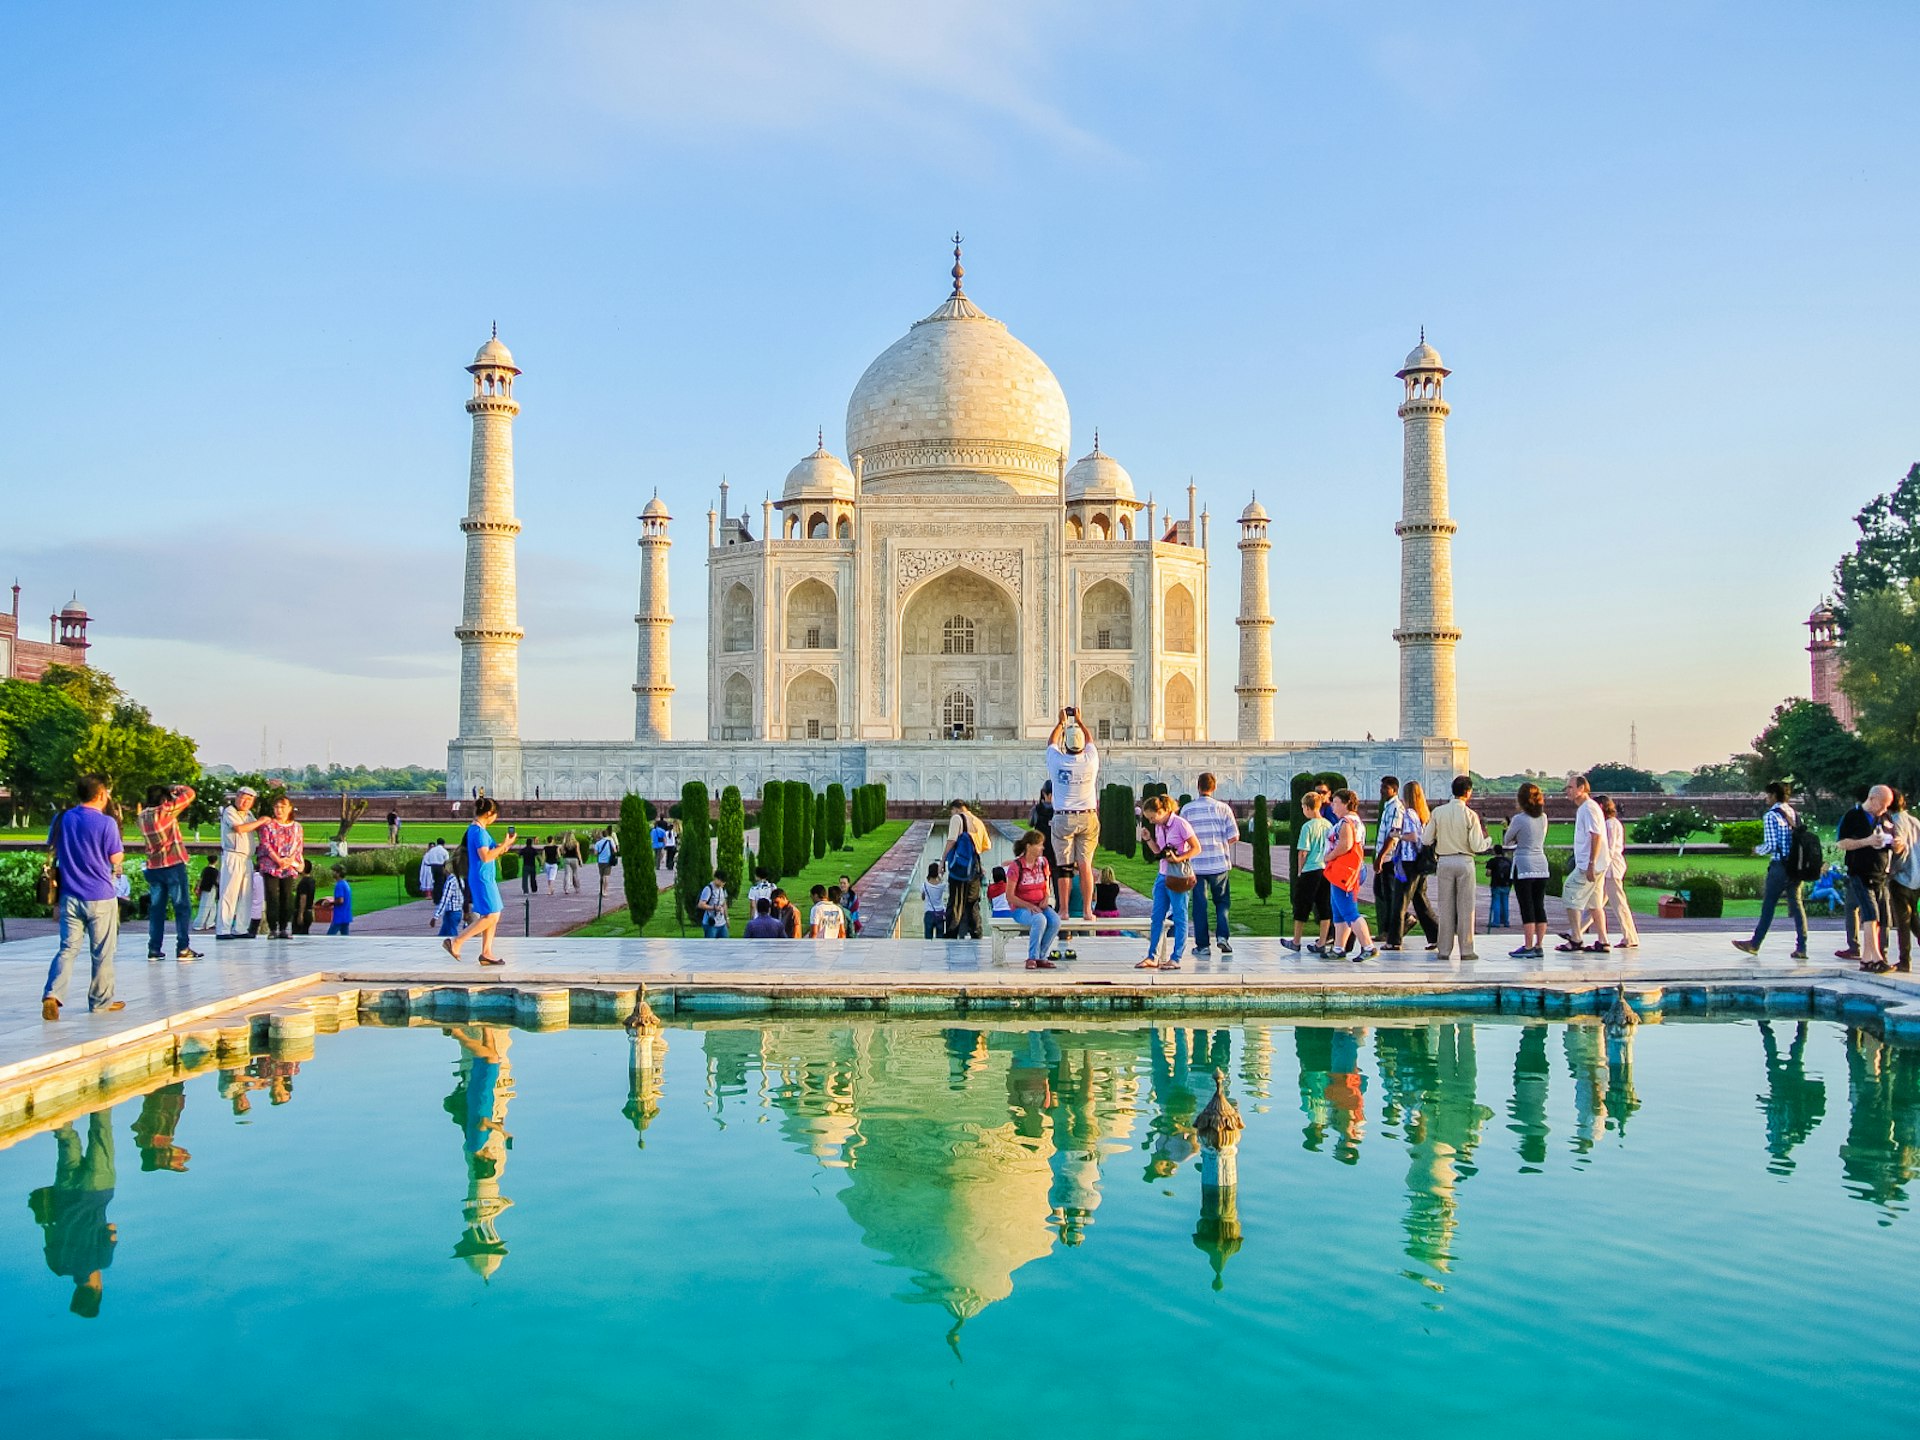 Tourists outside the Taj Mahal, India